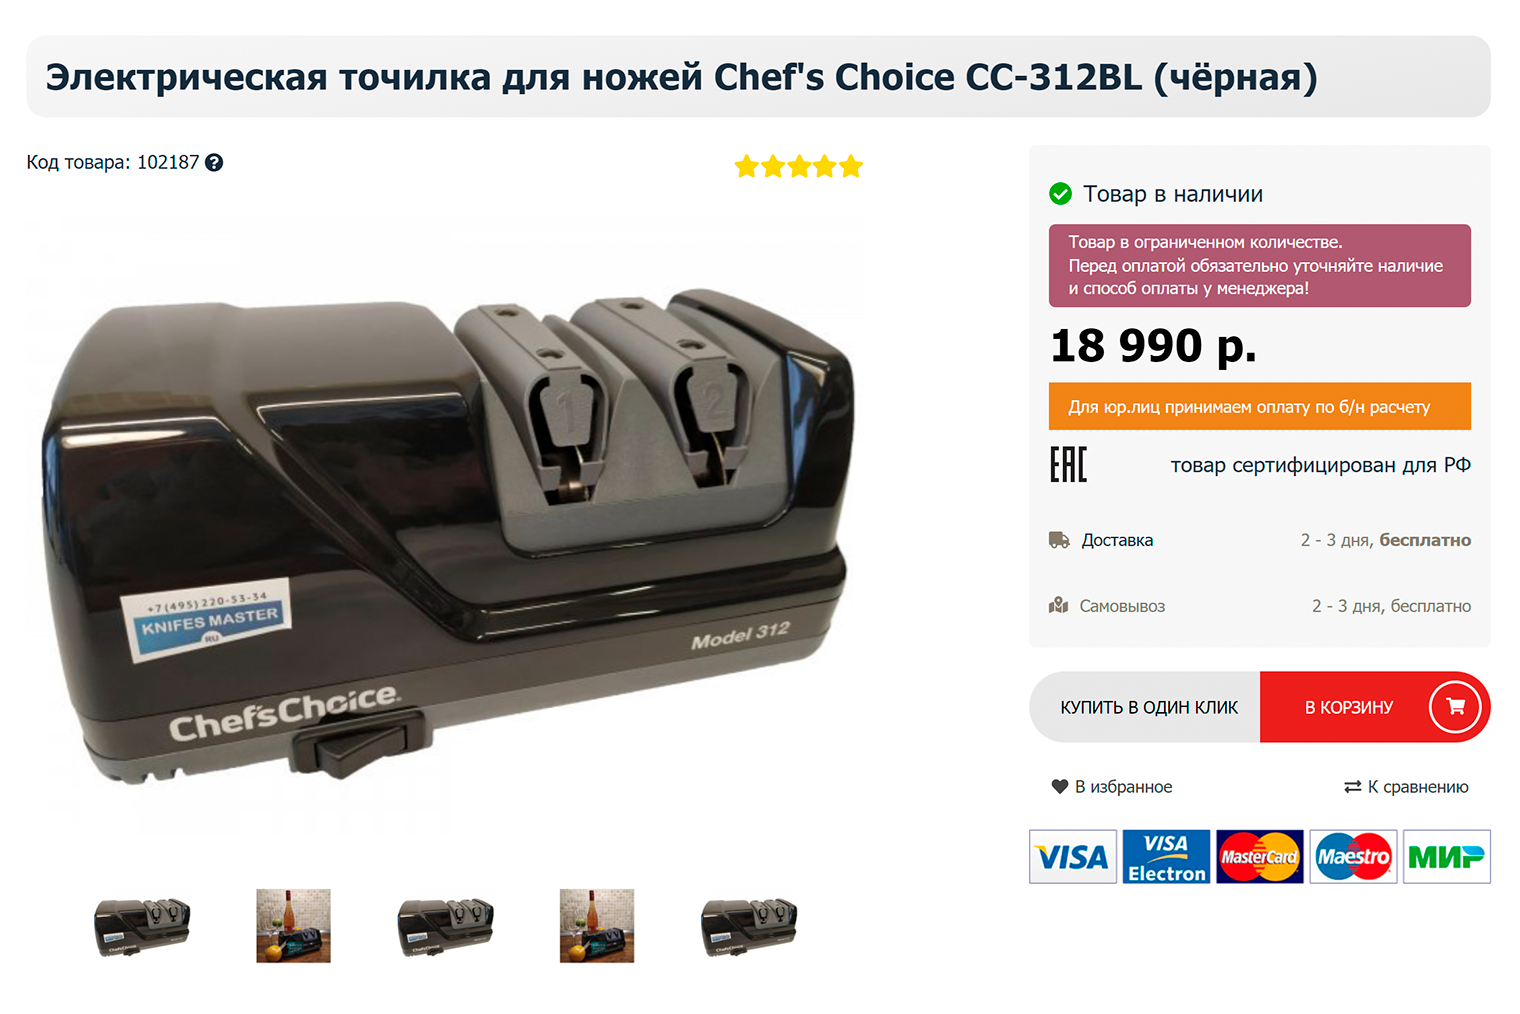 Электрический станок Chef’s Choice позволяет качественно и без специальных навыков заточить ножи с помощью вращающихся дисков с алмазным покрытием, но стоит дорого — 18 990 ₽. Источник: knifesmaster.ru